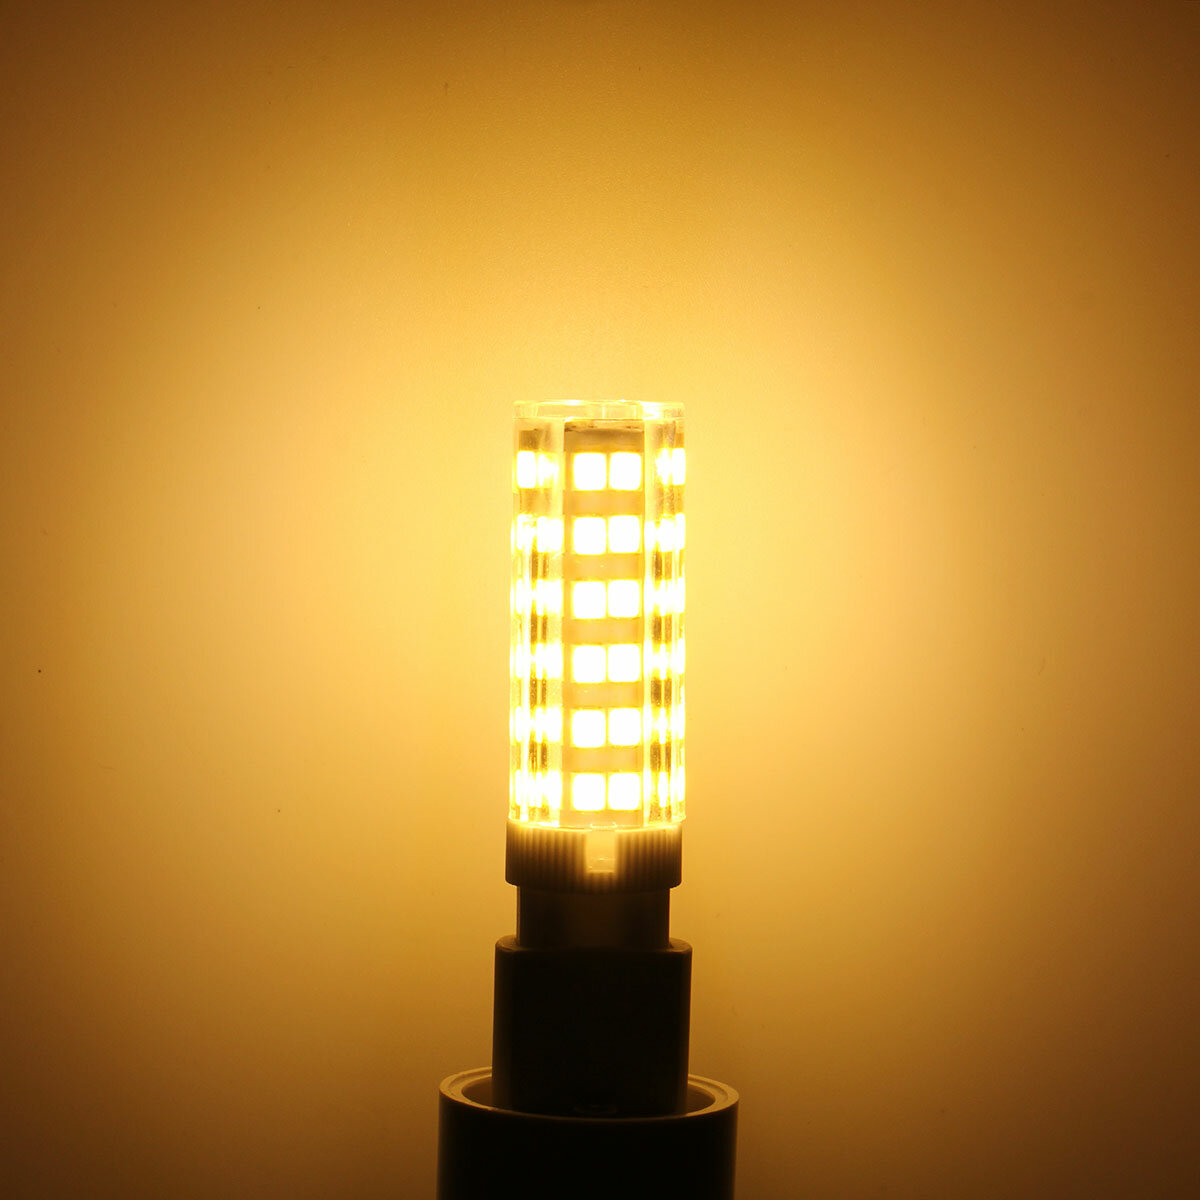 220V E14 G9 2835 76SMD LED Light Bulbs Dimmable Natural White/White Lamp Spot Light